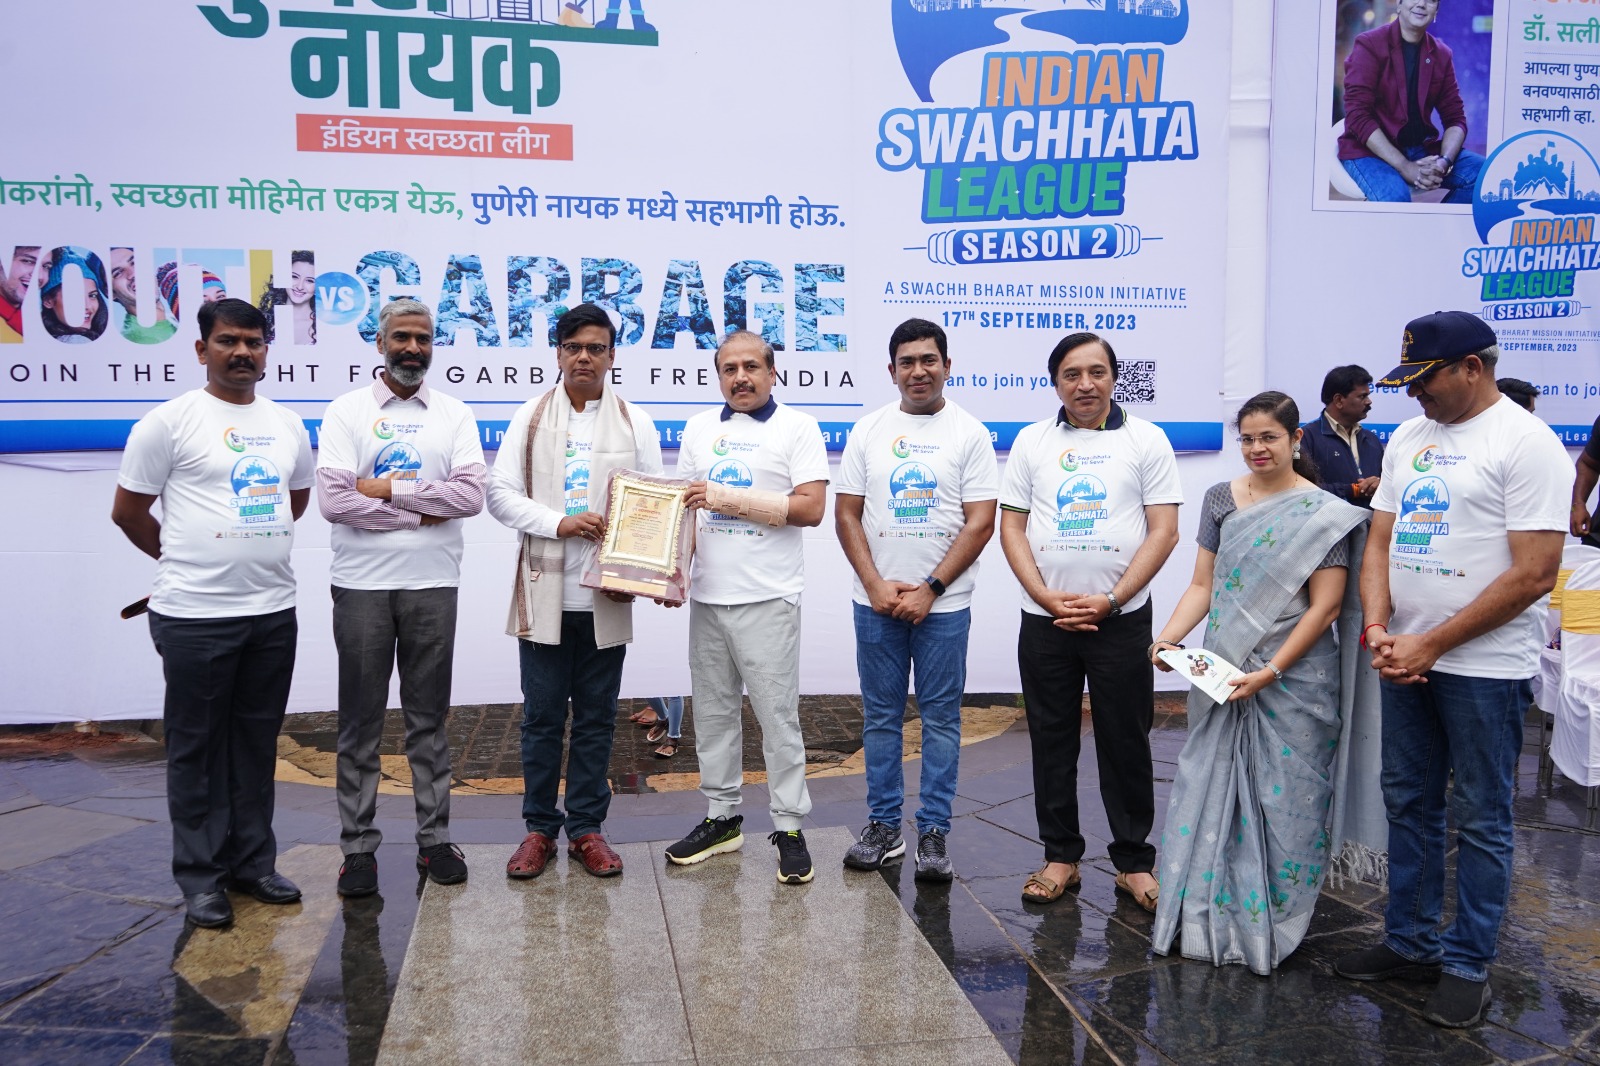 Indian Swachhata League | PMC Solid Waste Management | स्वच्छ भारत मिशन अर्बन २.० उपक्रमांतर्गत पुणे महापालिकेकडून “मेगा ड्राईव्ह” चे आयोजन